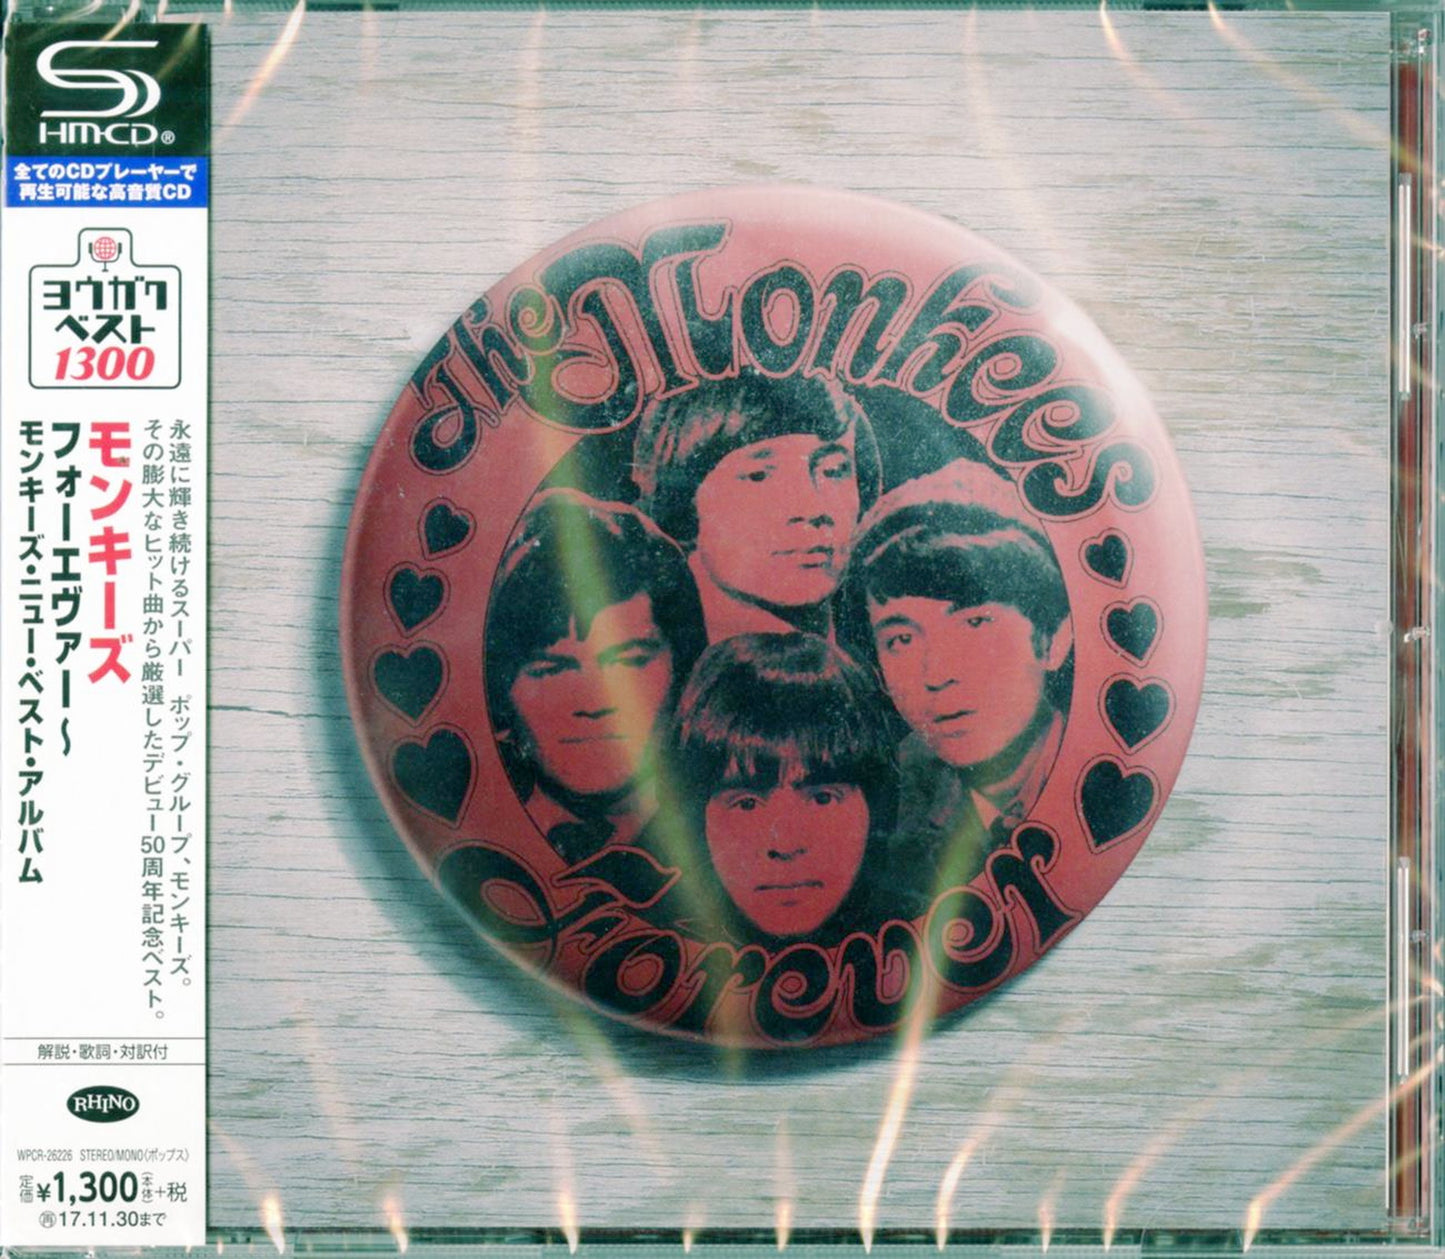 The Monkees - Forever - Japan  SHM-CD Bonus Track